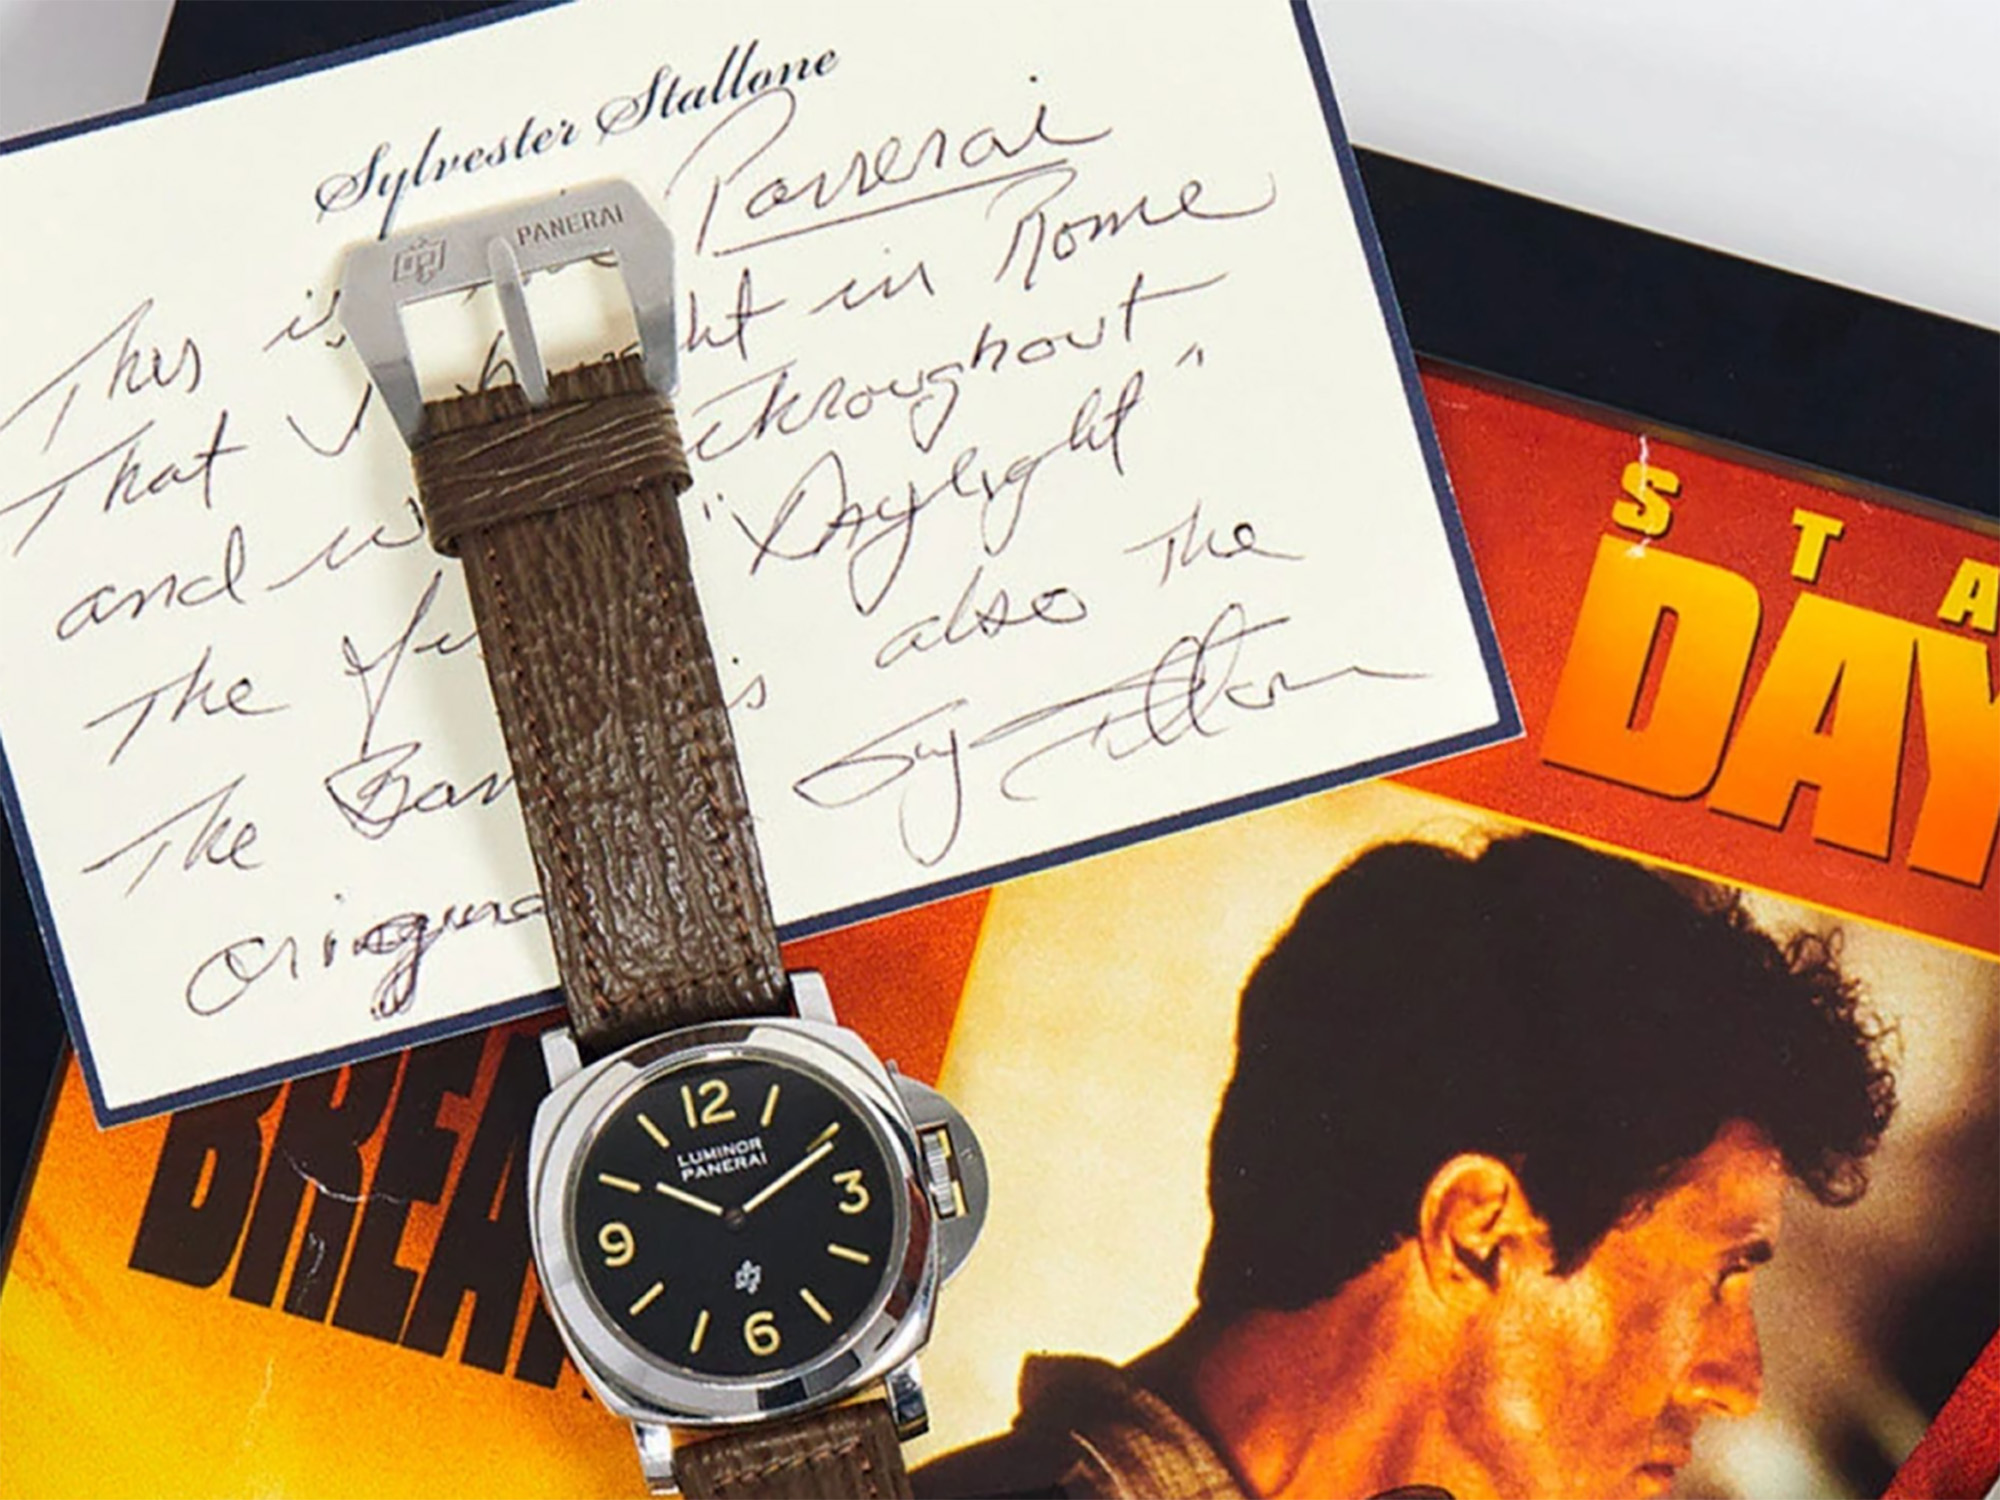 Stallone ließ die Uhr bei Phillips mit einer handgeschriebenen Notiz versteigern. Sie wurde für $214,200 veräußert. Quelle: Perezcope